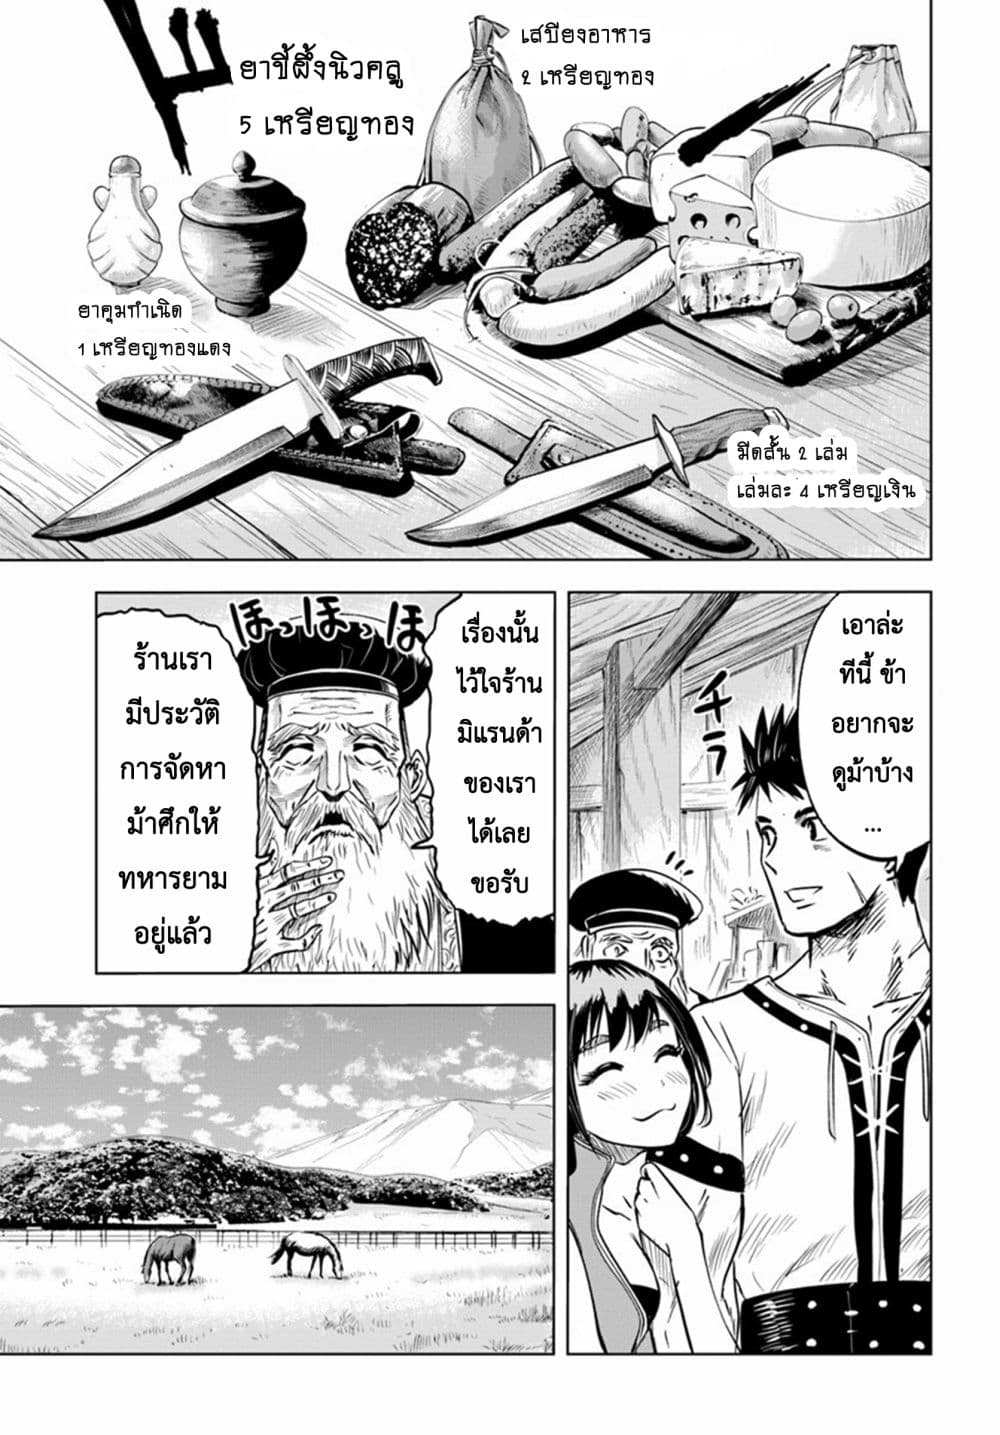 Oukoku e Tsuzuku Michi dorei Kenshi no Nariagari Eiyutan (Haaremu Raifu) - Road to the Kingdom Slave Swordsman the Rise of Heroes - Harem Life 7.1-7.1